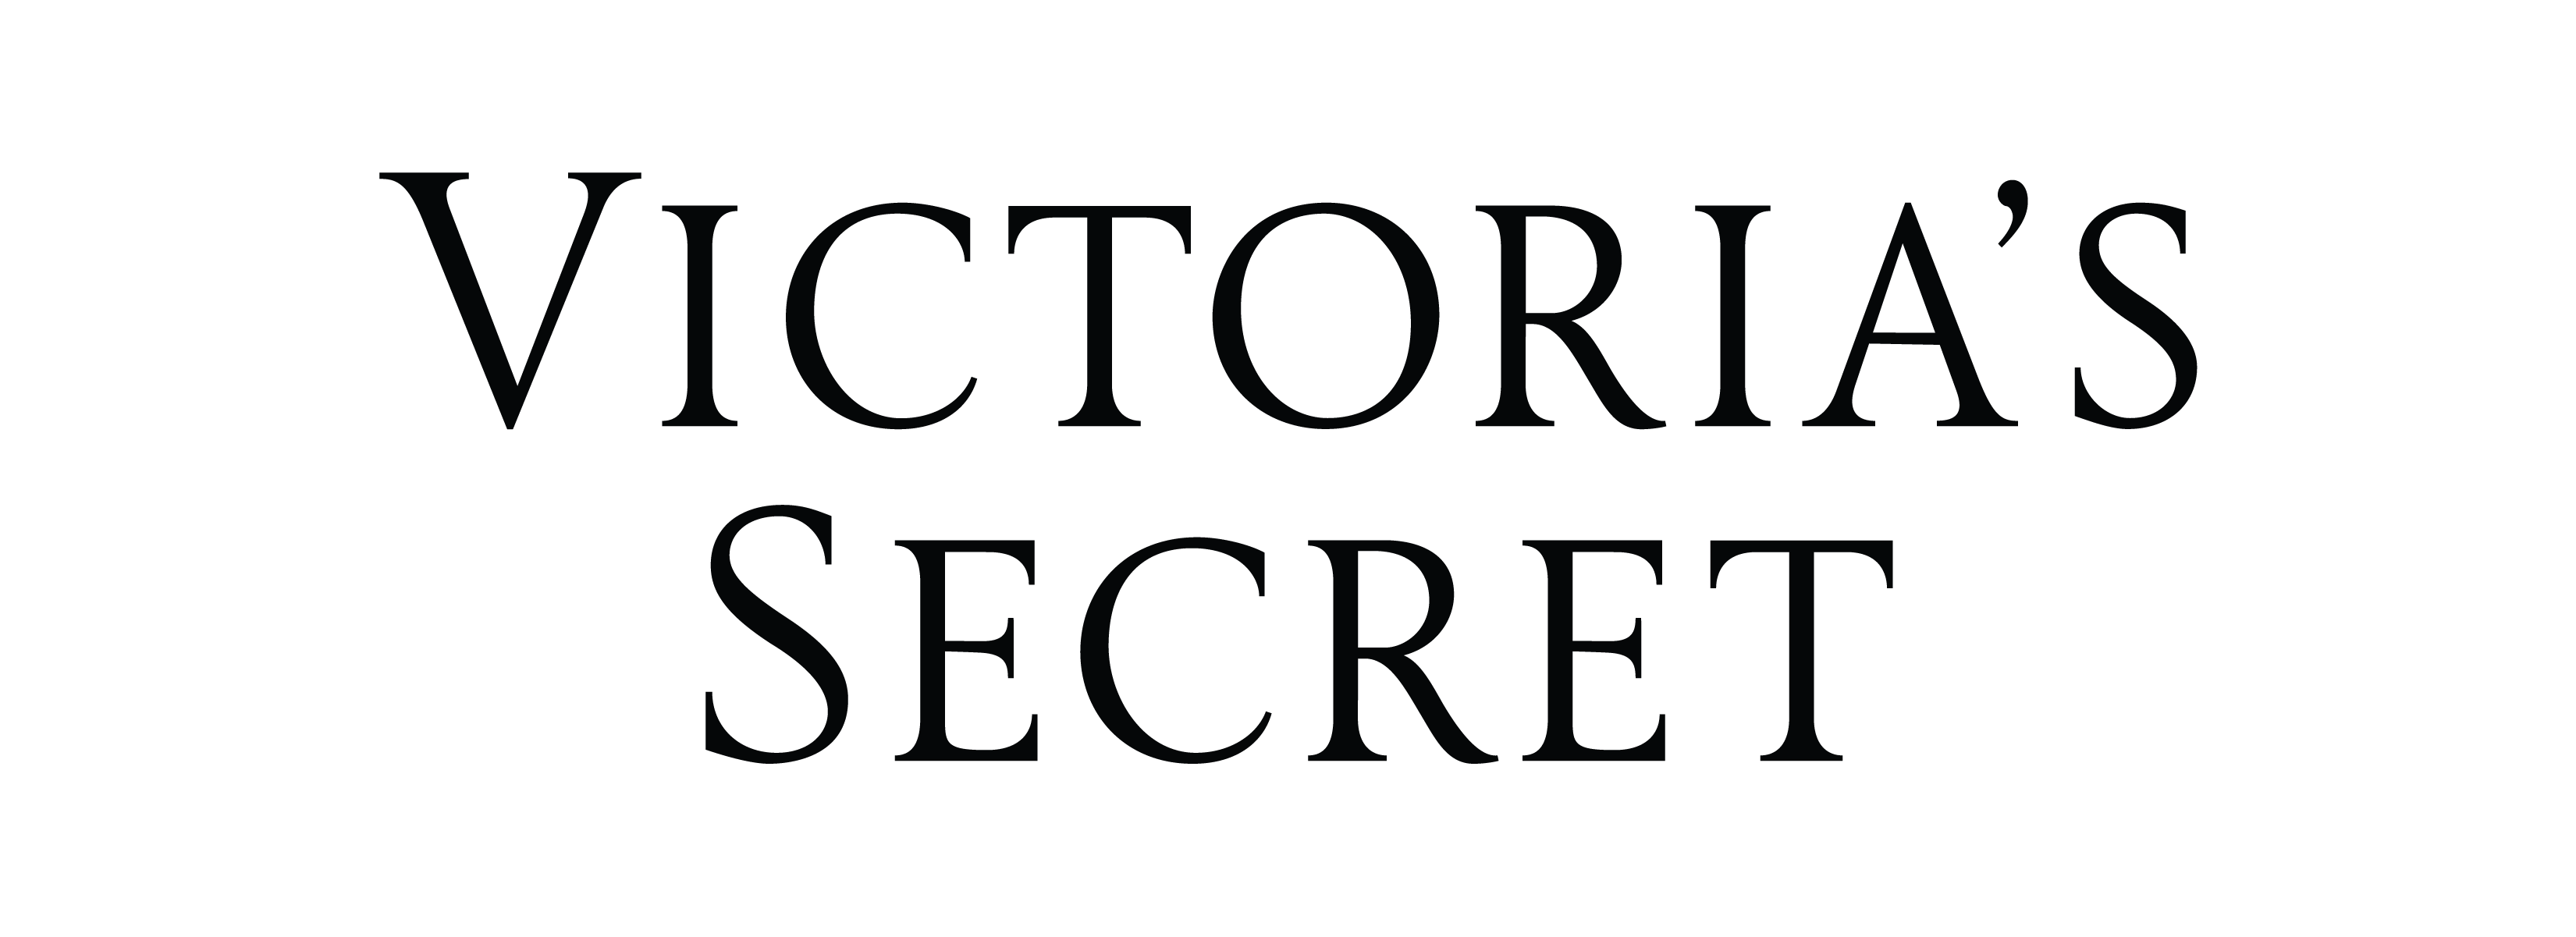 Victoria’s Secret CEO steps down